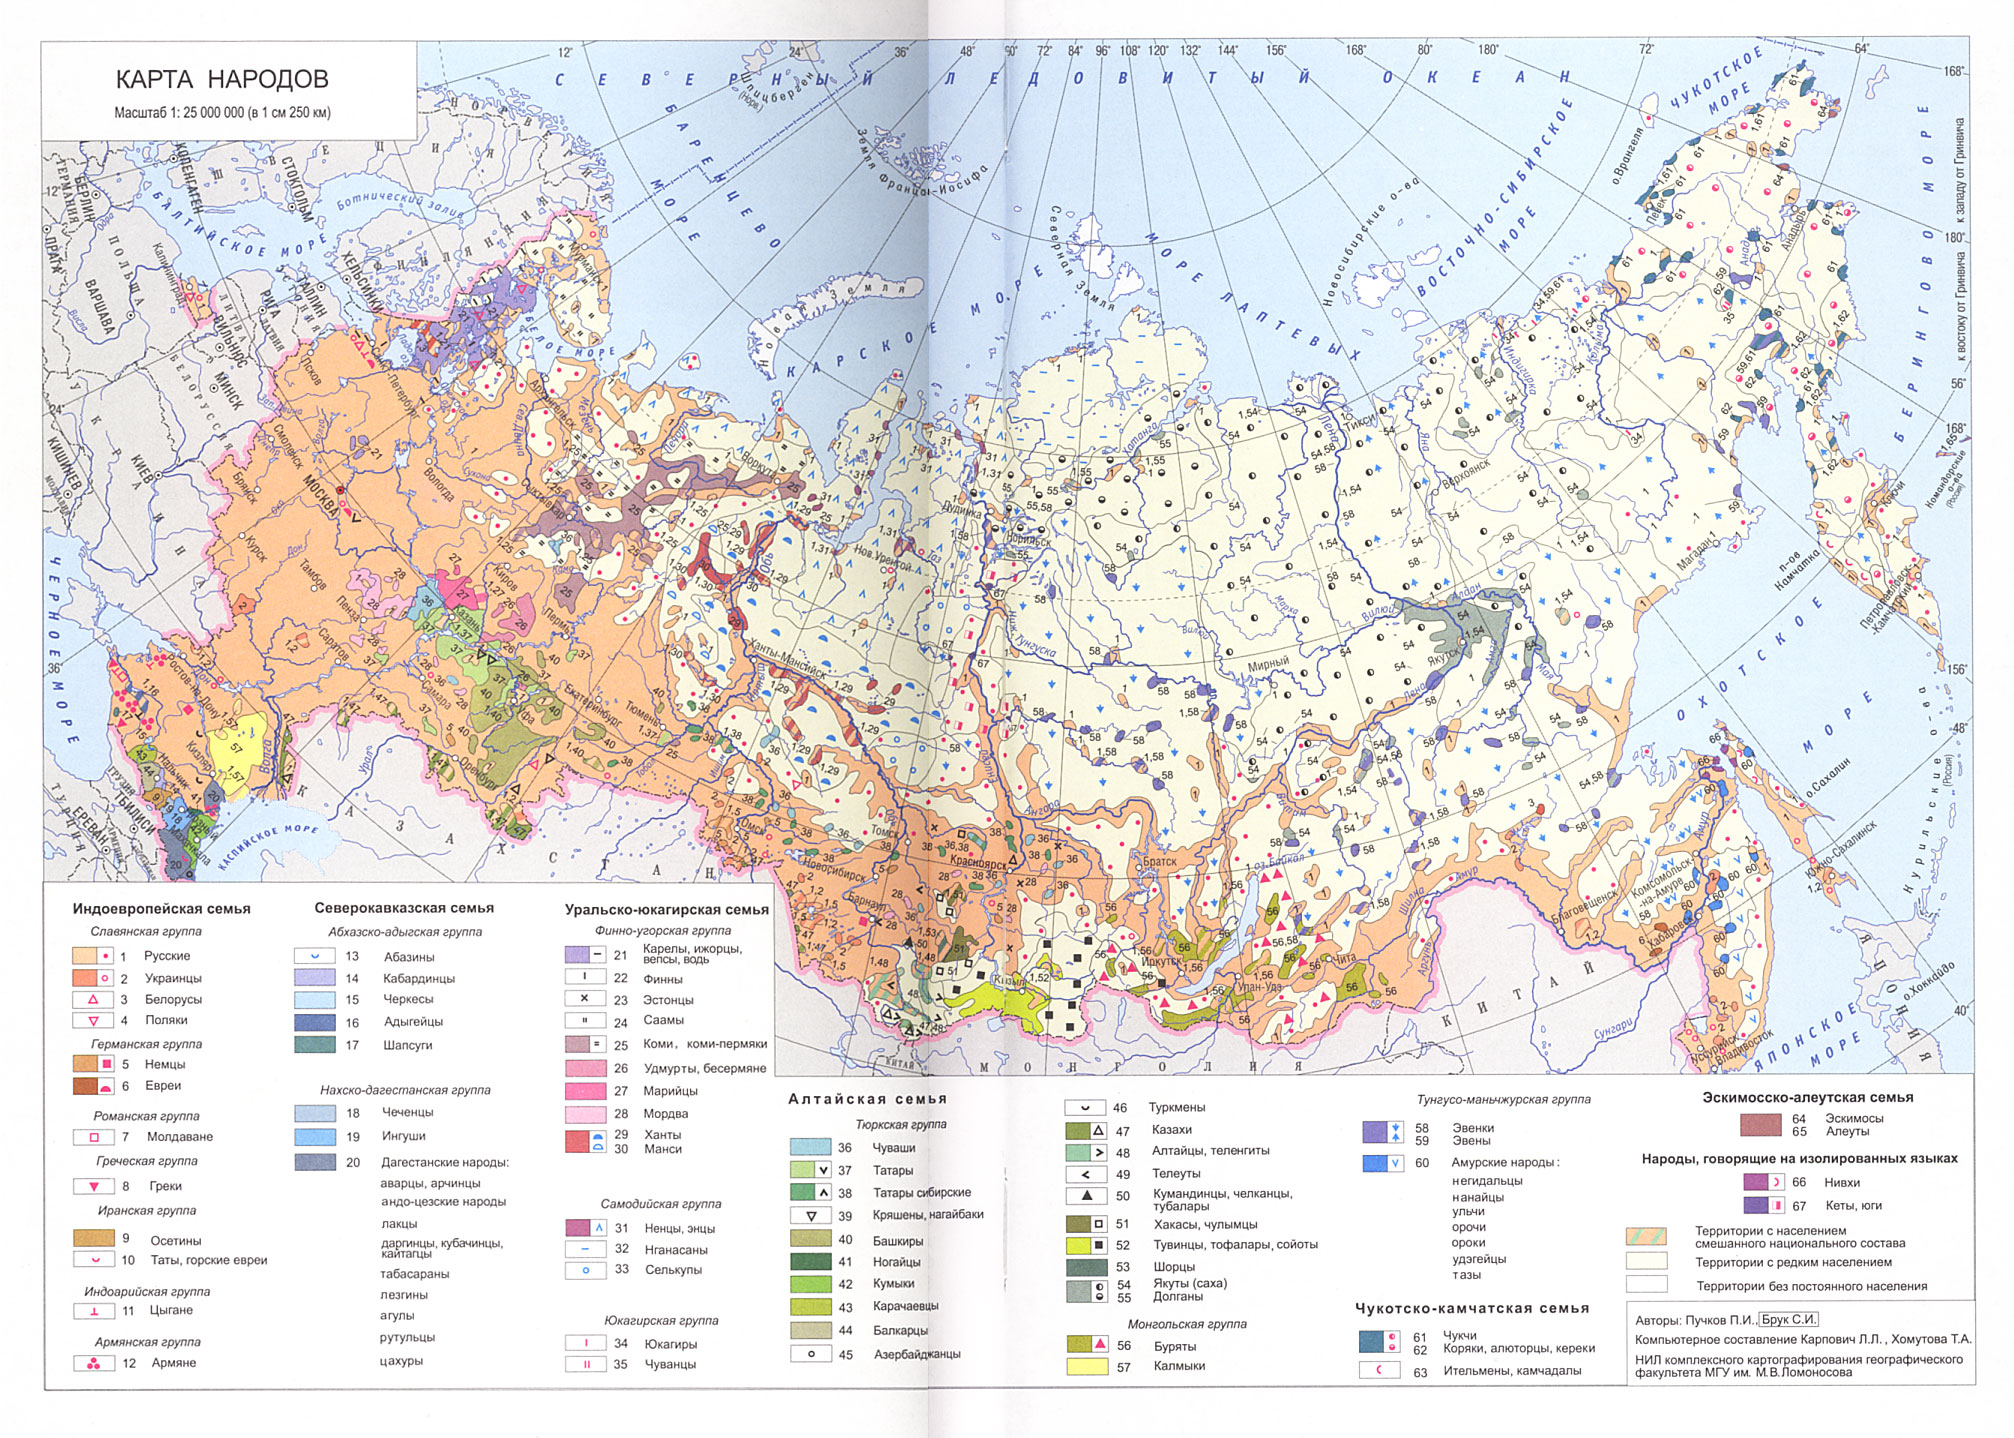 Доклад: Национальный состав населения РФ